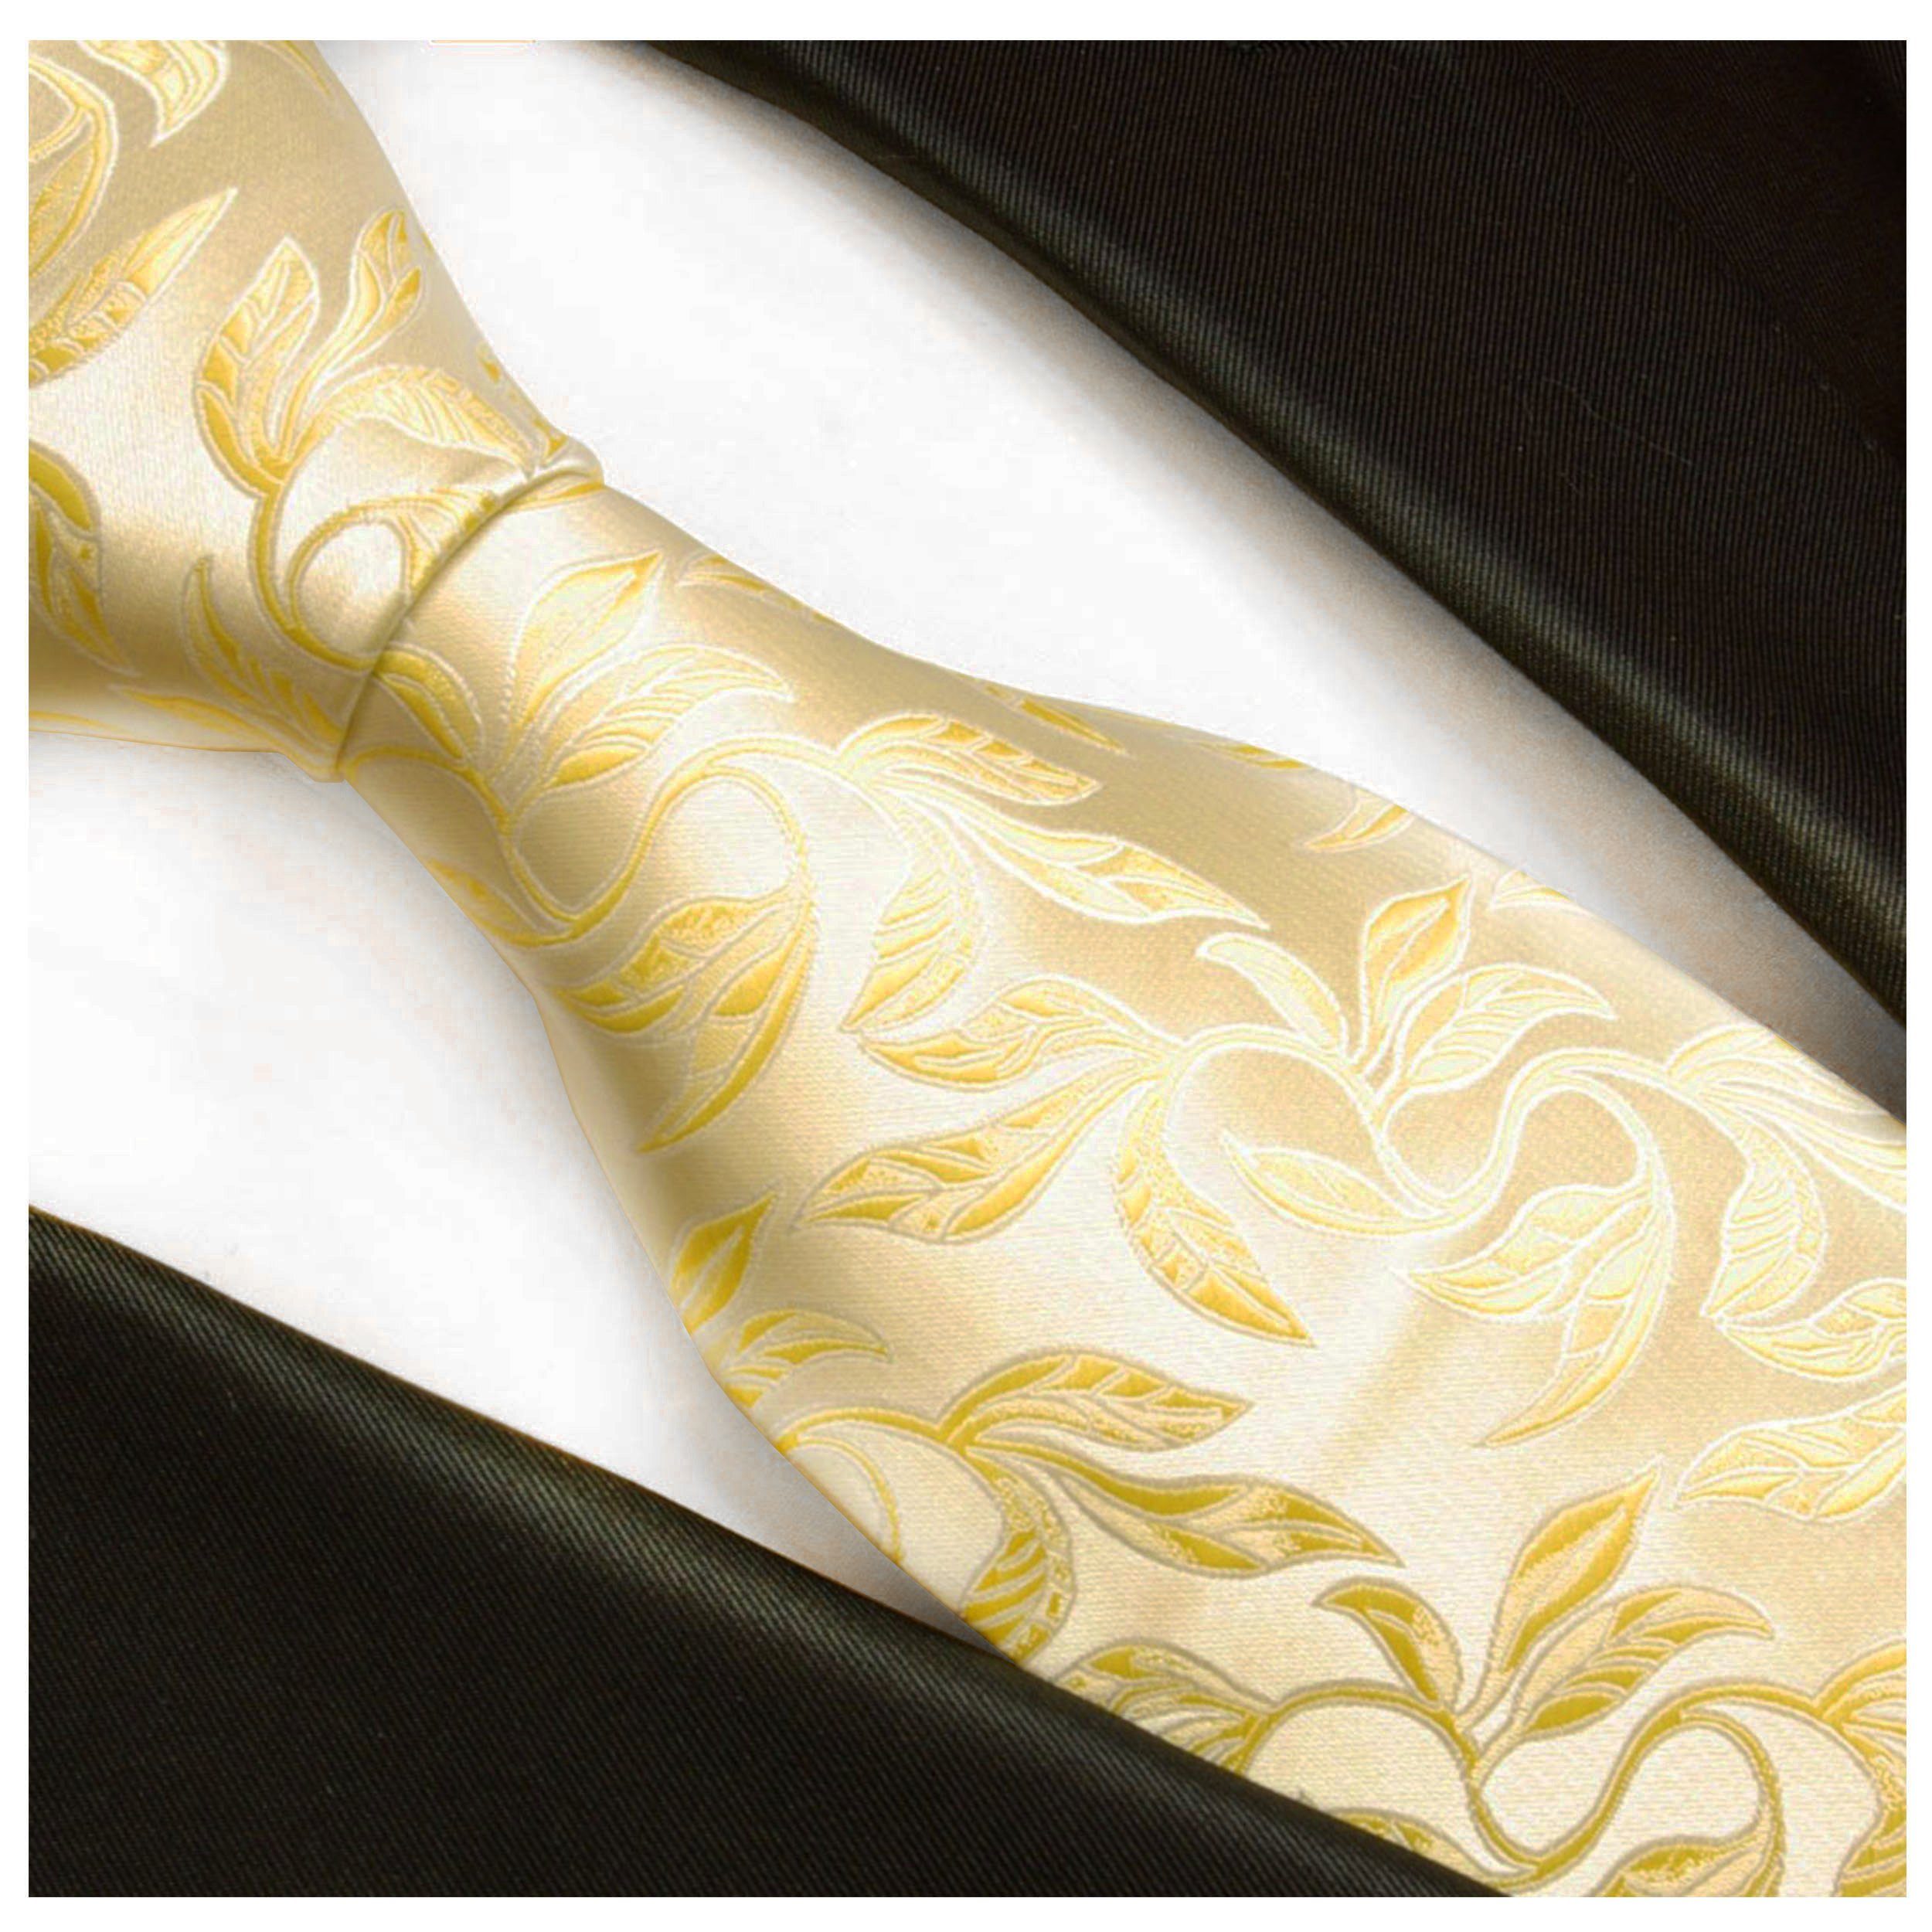 Mikrofaser Schmal (6cm), Paul Herren V15 Hochzeitskrawatte - gold floral Krawatte - Malone creme Bräutigam